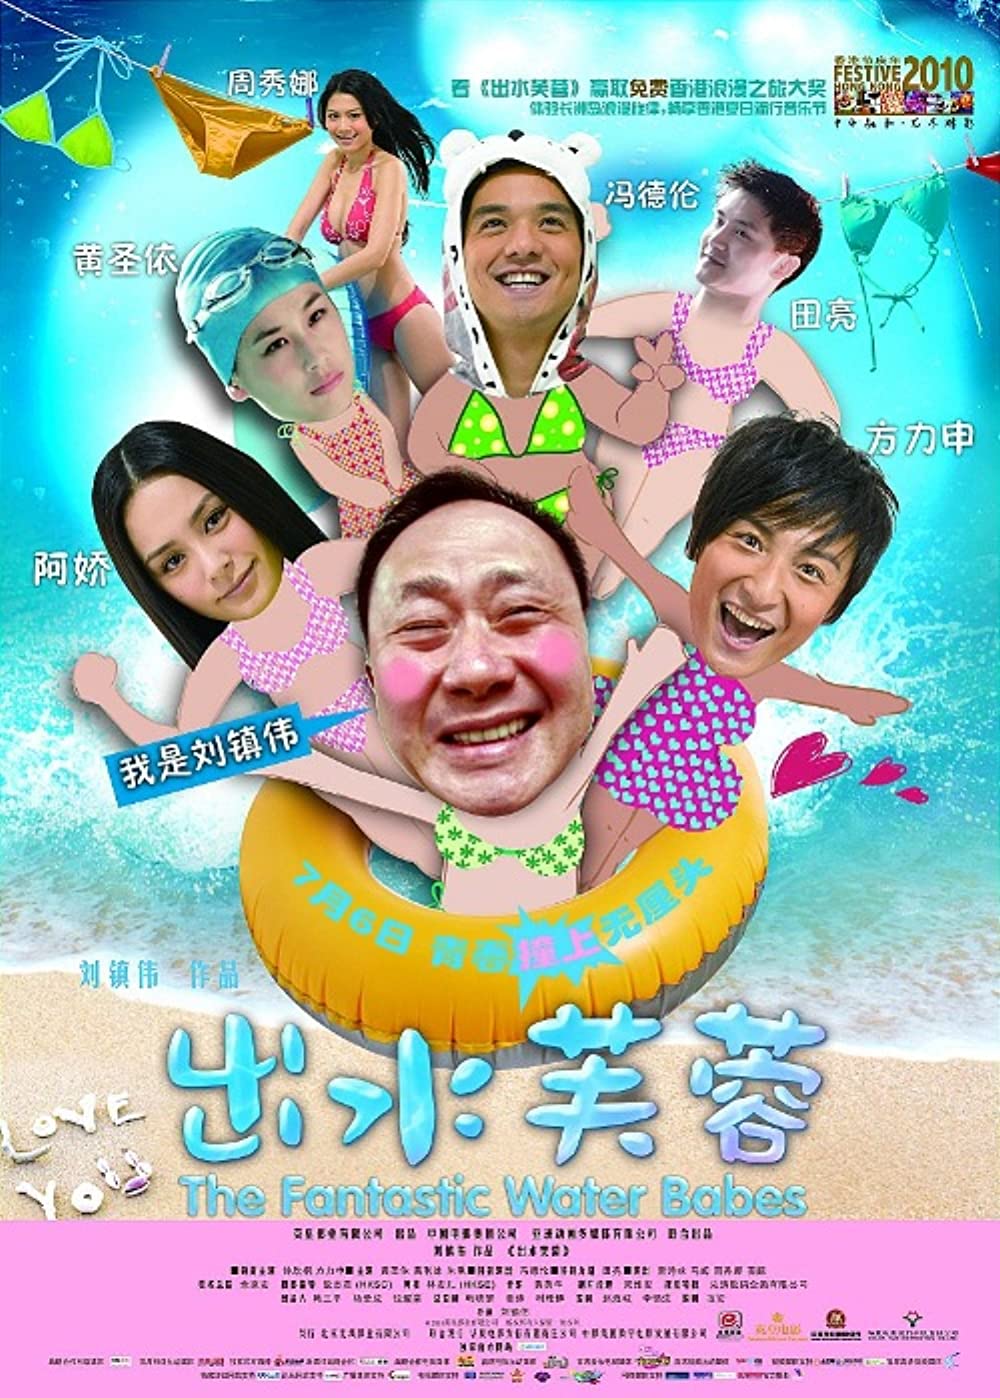 Download Chut sui fu yung Movie | Watch Chut Sui Fu Yung Review